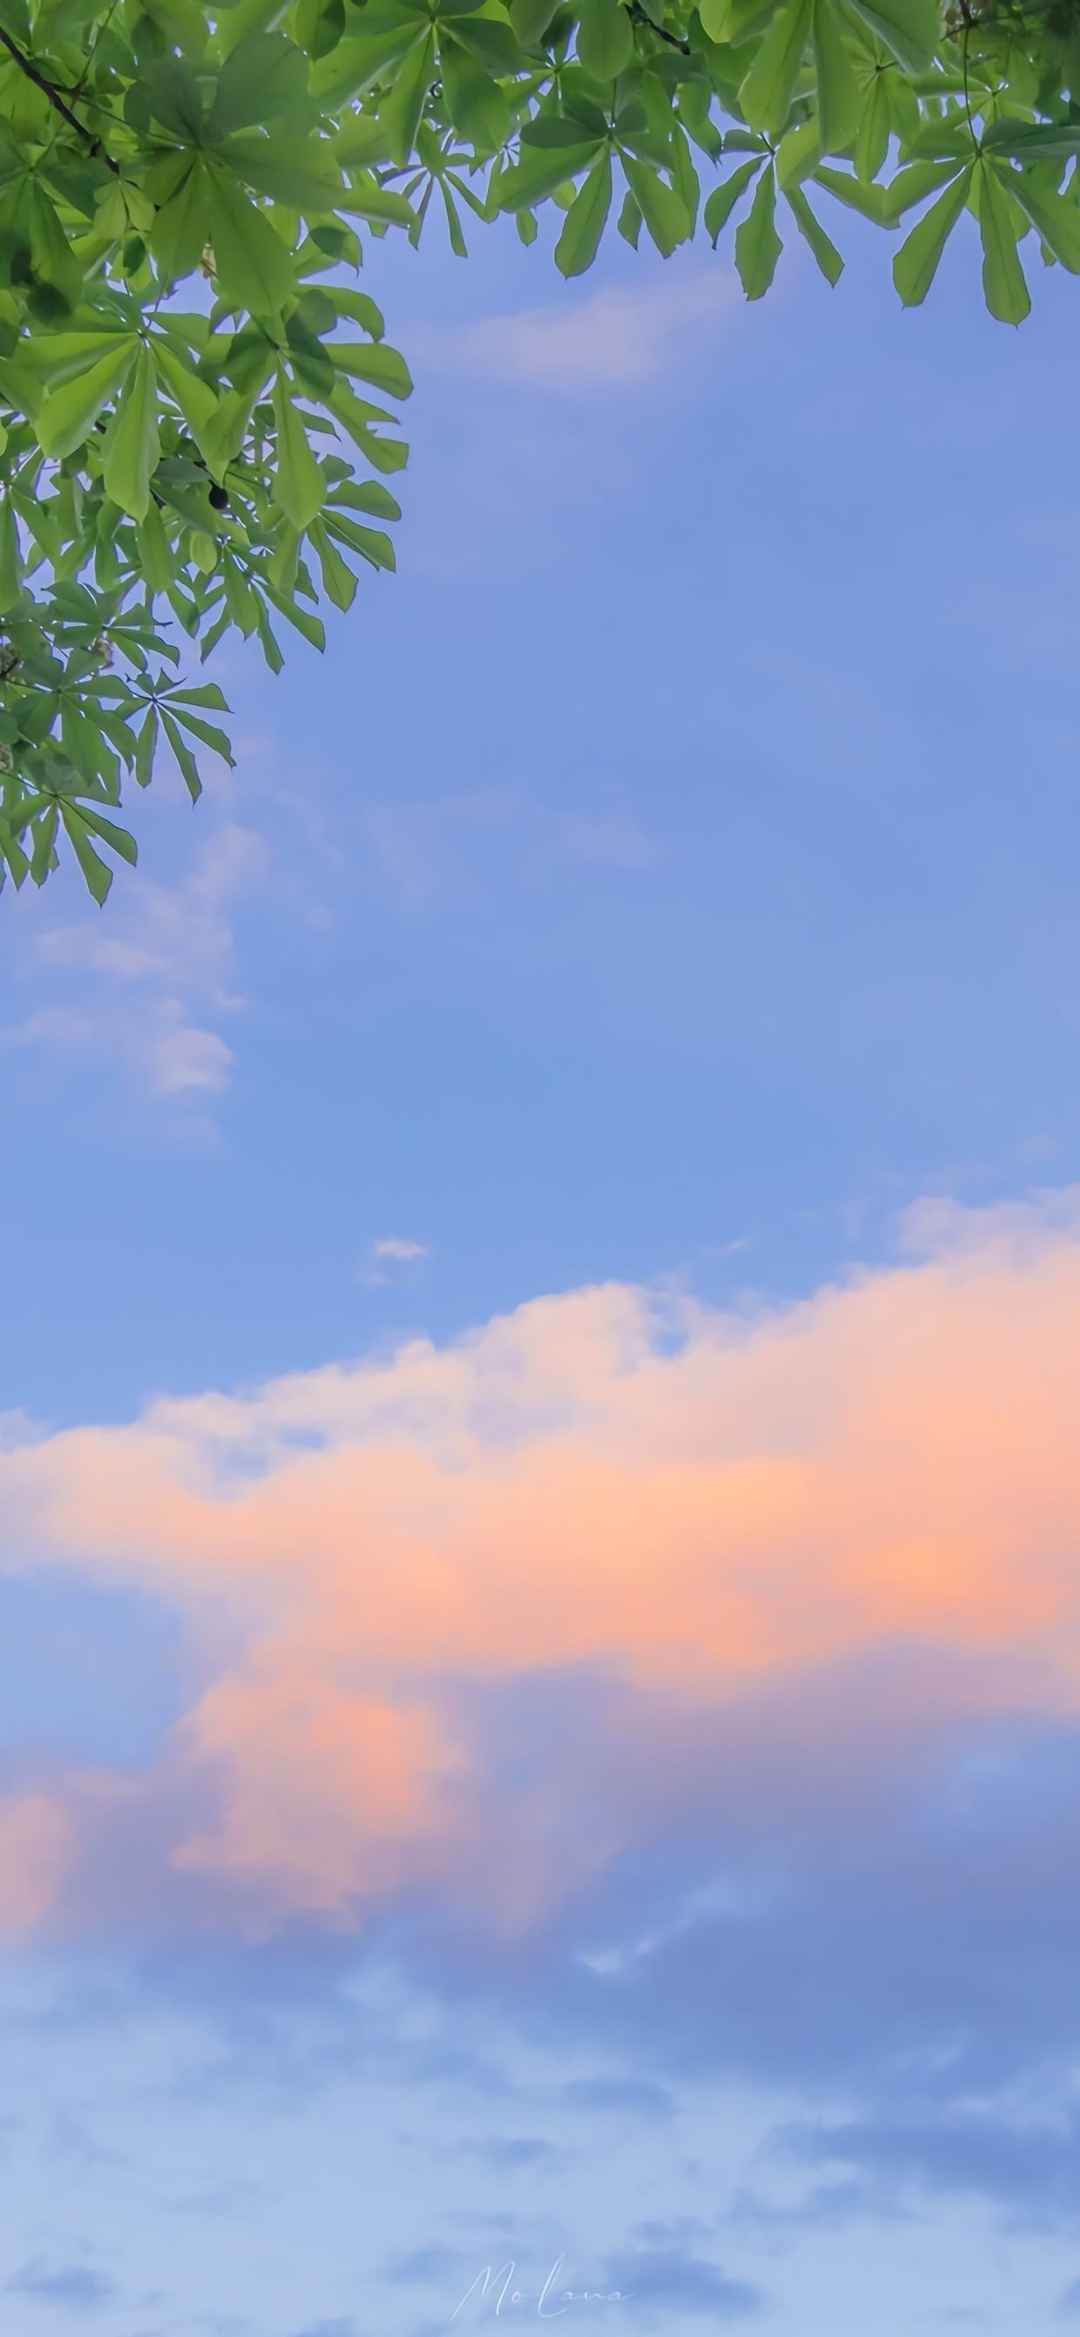 蓝色天空风景图片手机壁纸-